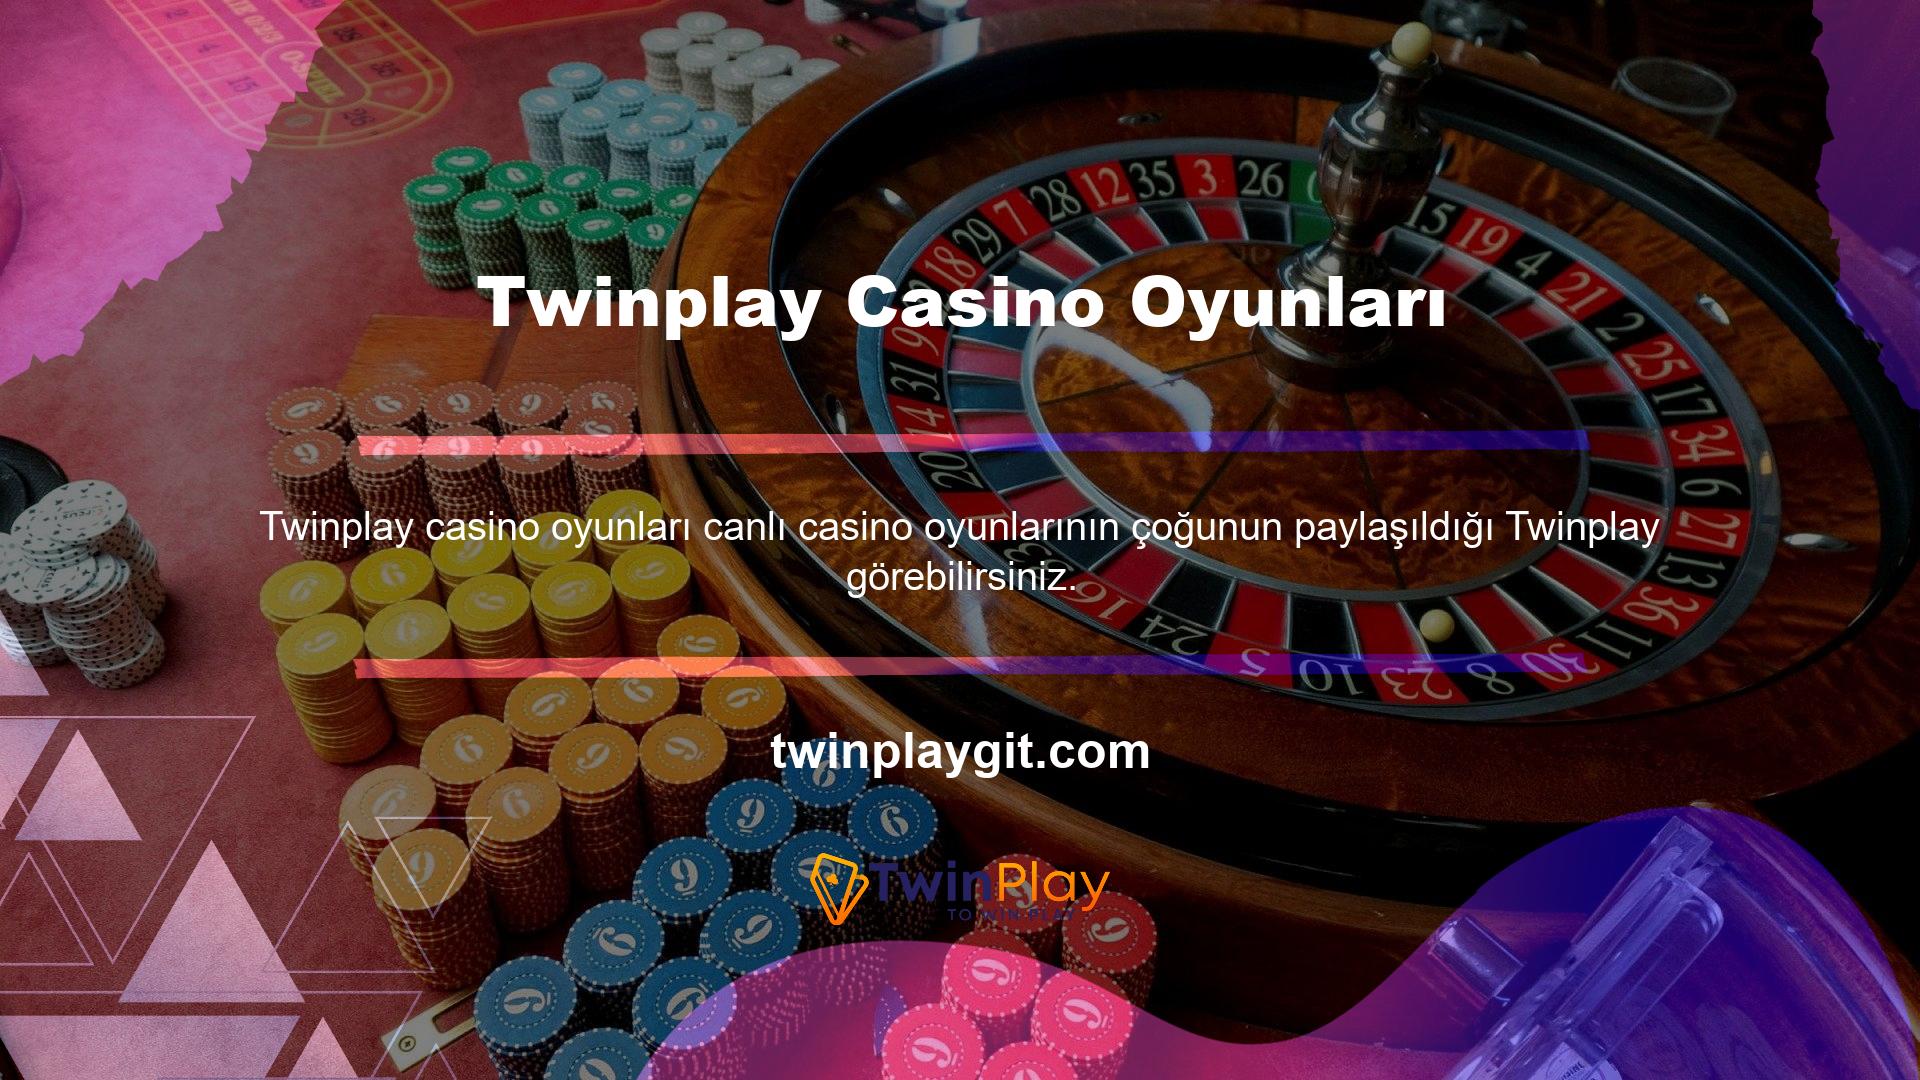 Bayi, Monopoly içerikli Twinplay casino oyunu eğlenceli bir yoldur